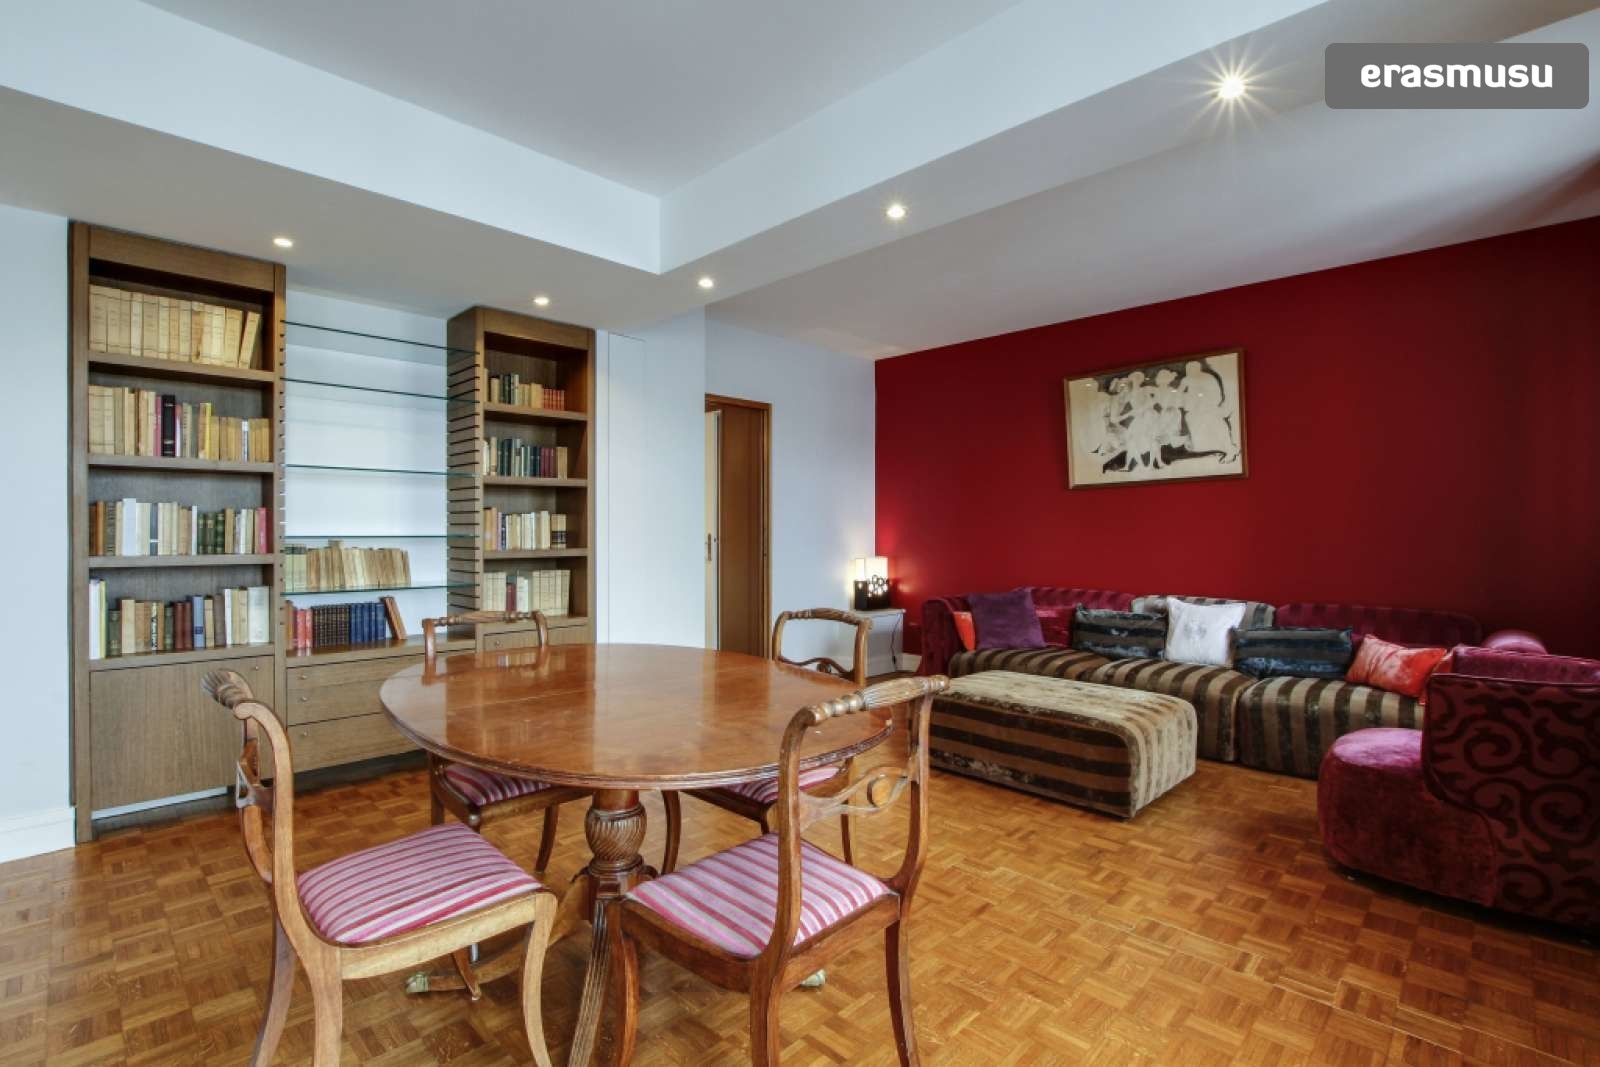 2 Bedroom Apartment For Rent In Paris 15th Arrondissement Flat Rent Paris